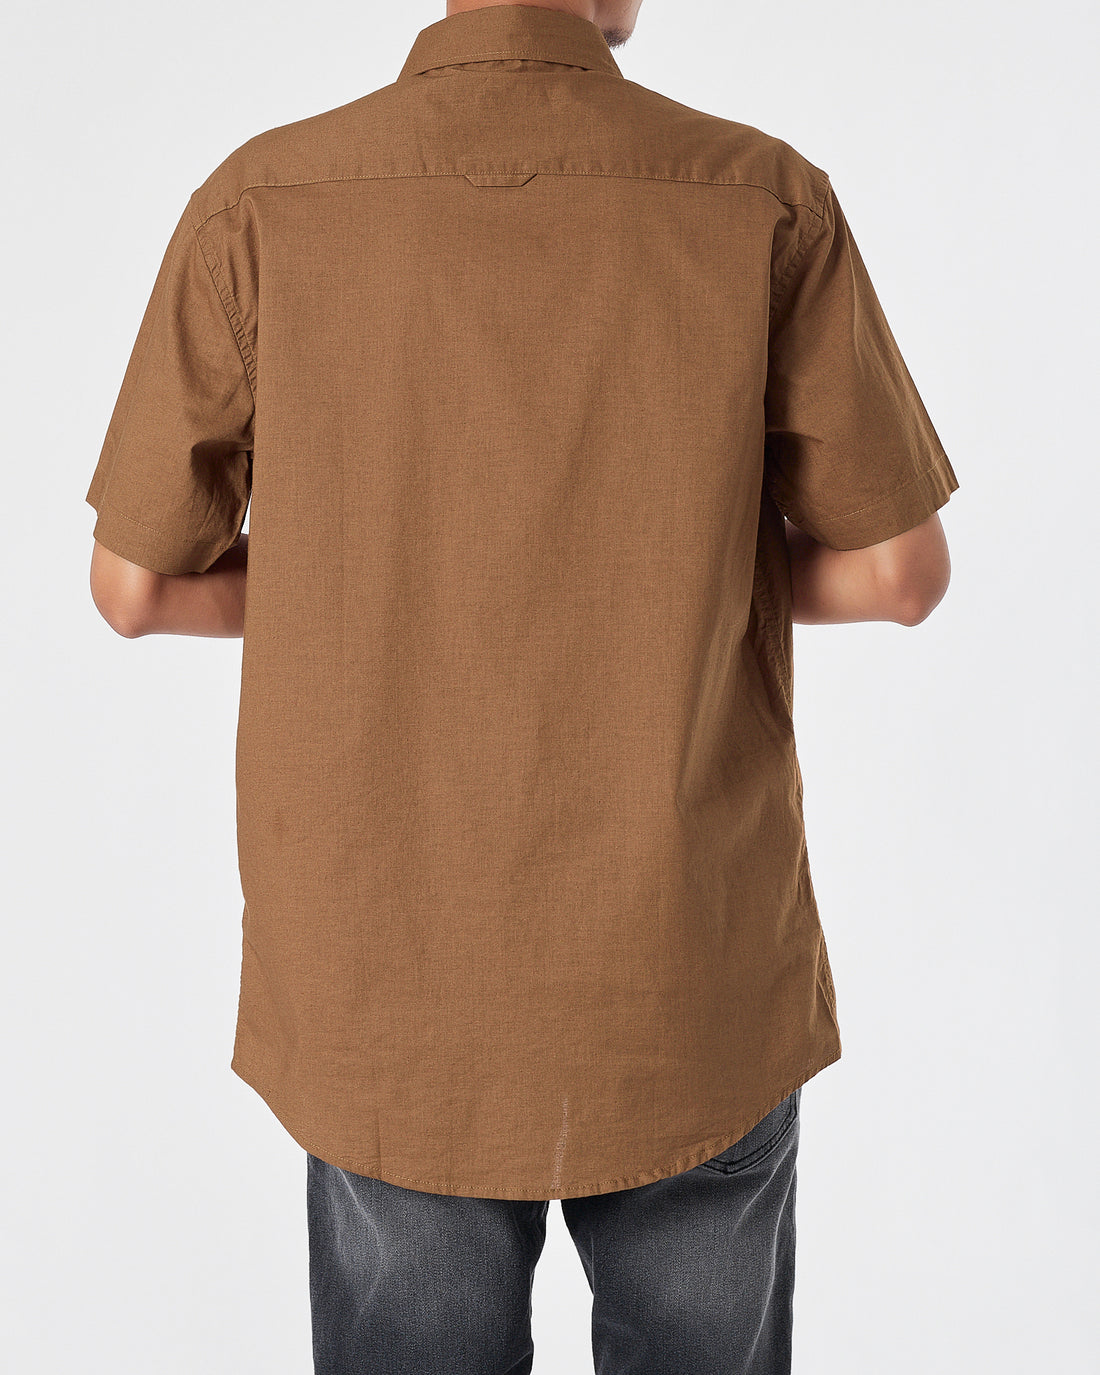 RL Casual Linen Men Brown Shirts Short Sleeve 20.90